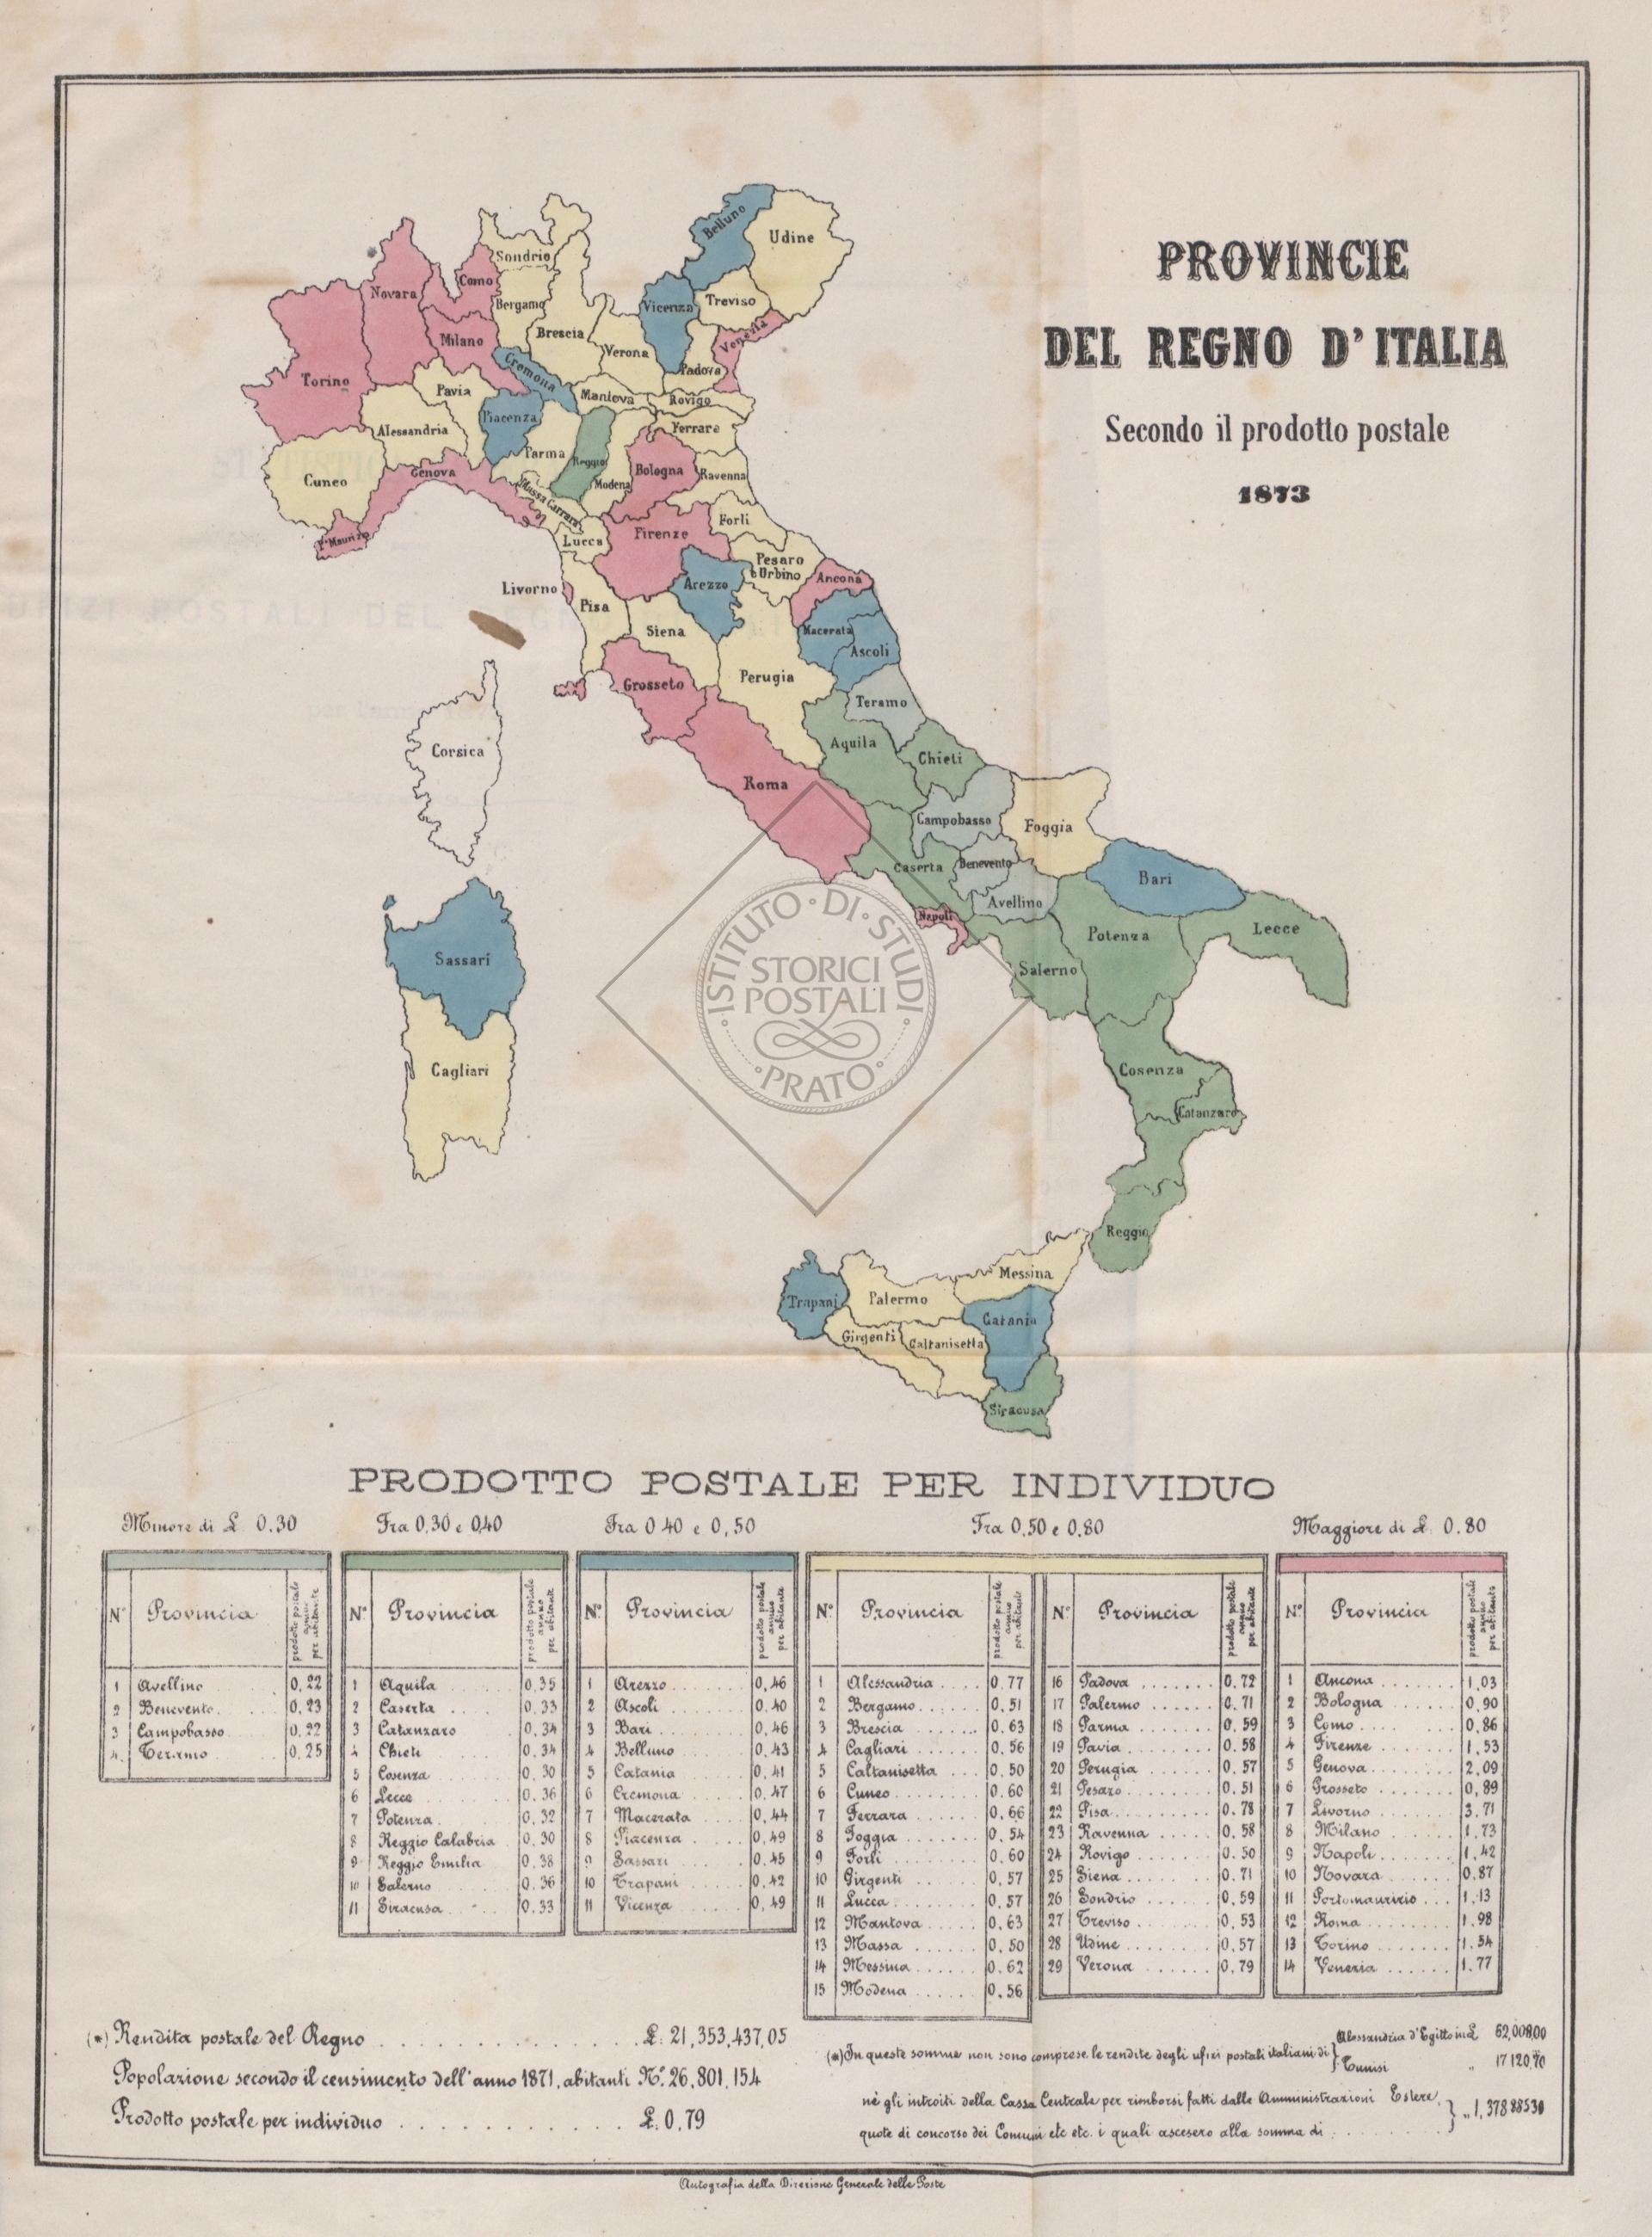 Provincie del regno d'Italia secondo il prodotto postale (dalla relazione del 1873)